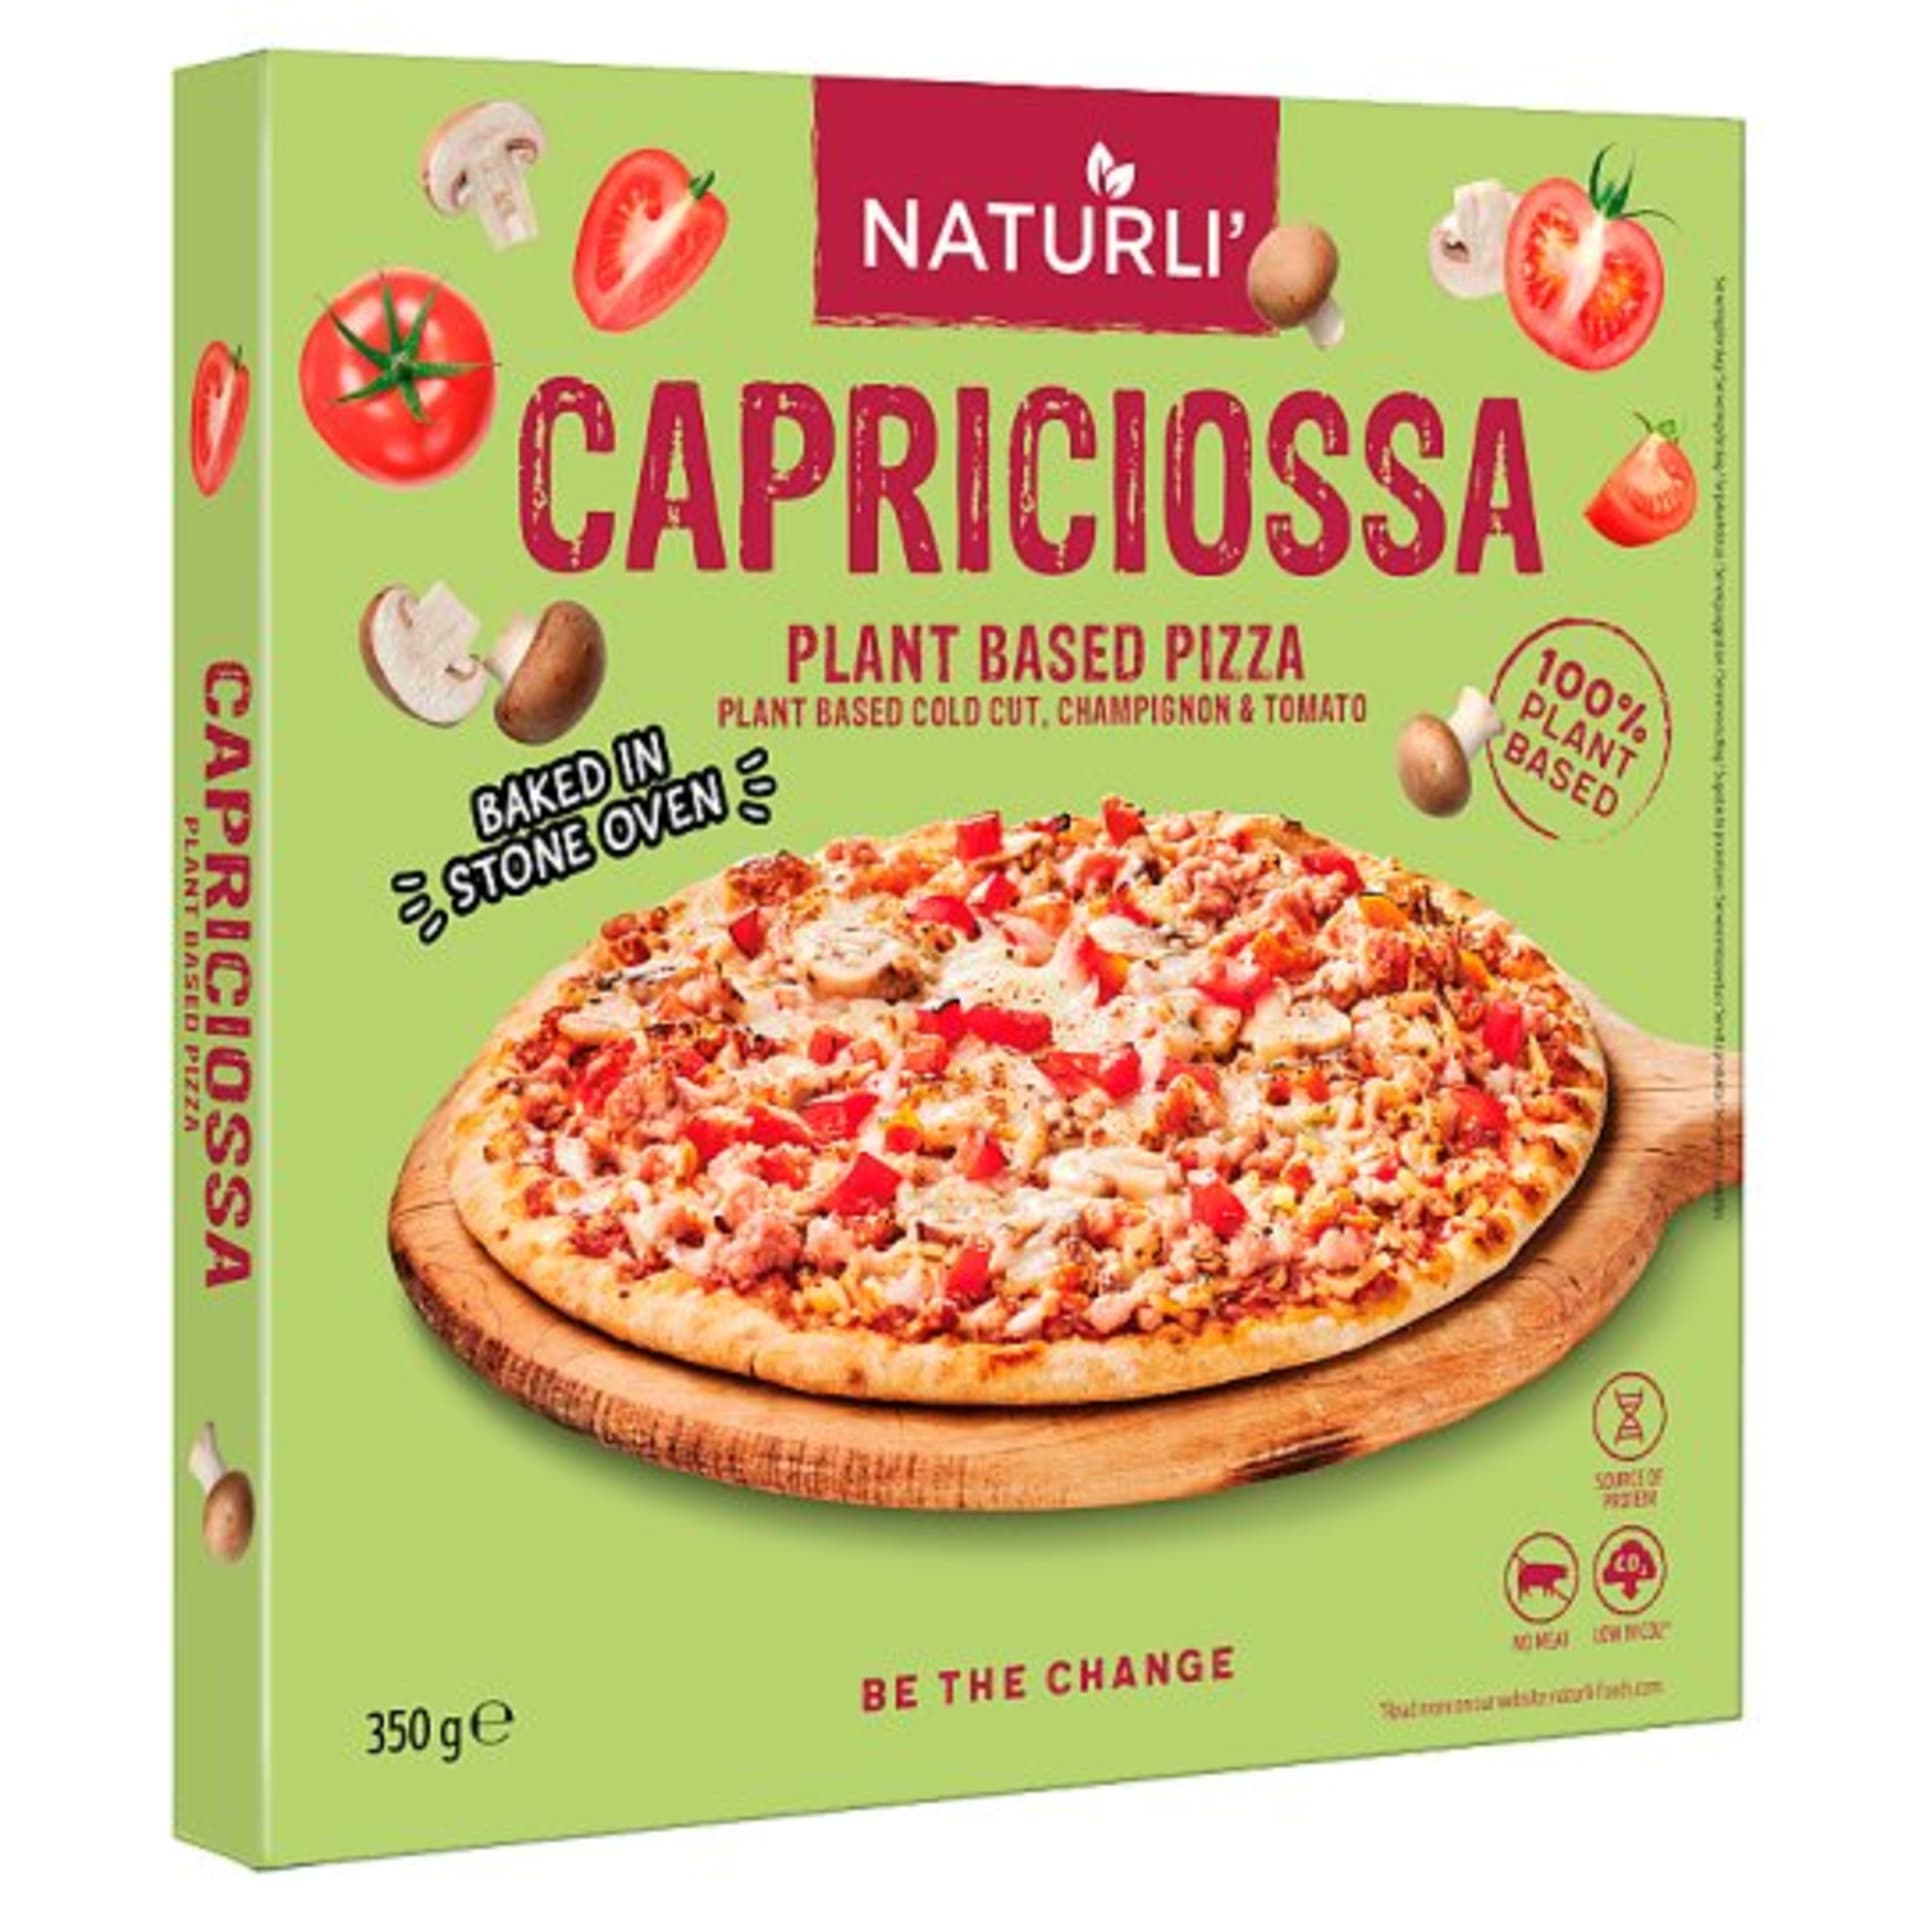 Rostlinné pizzy, které můžete mít vždy doma.